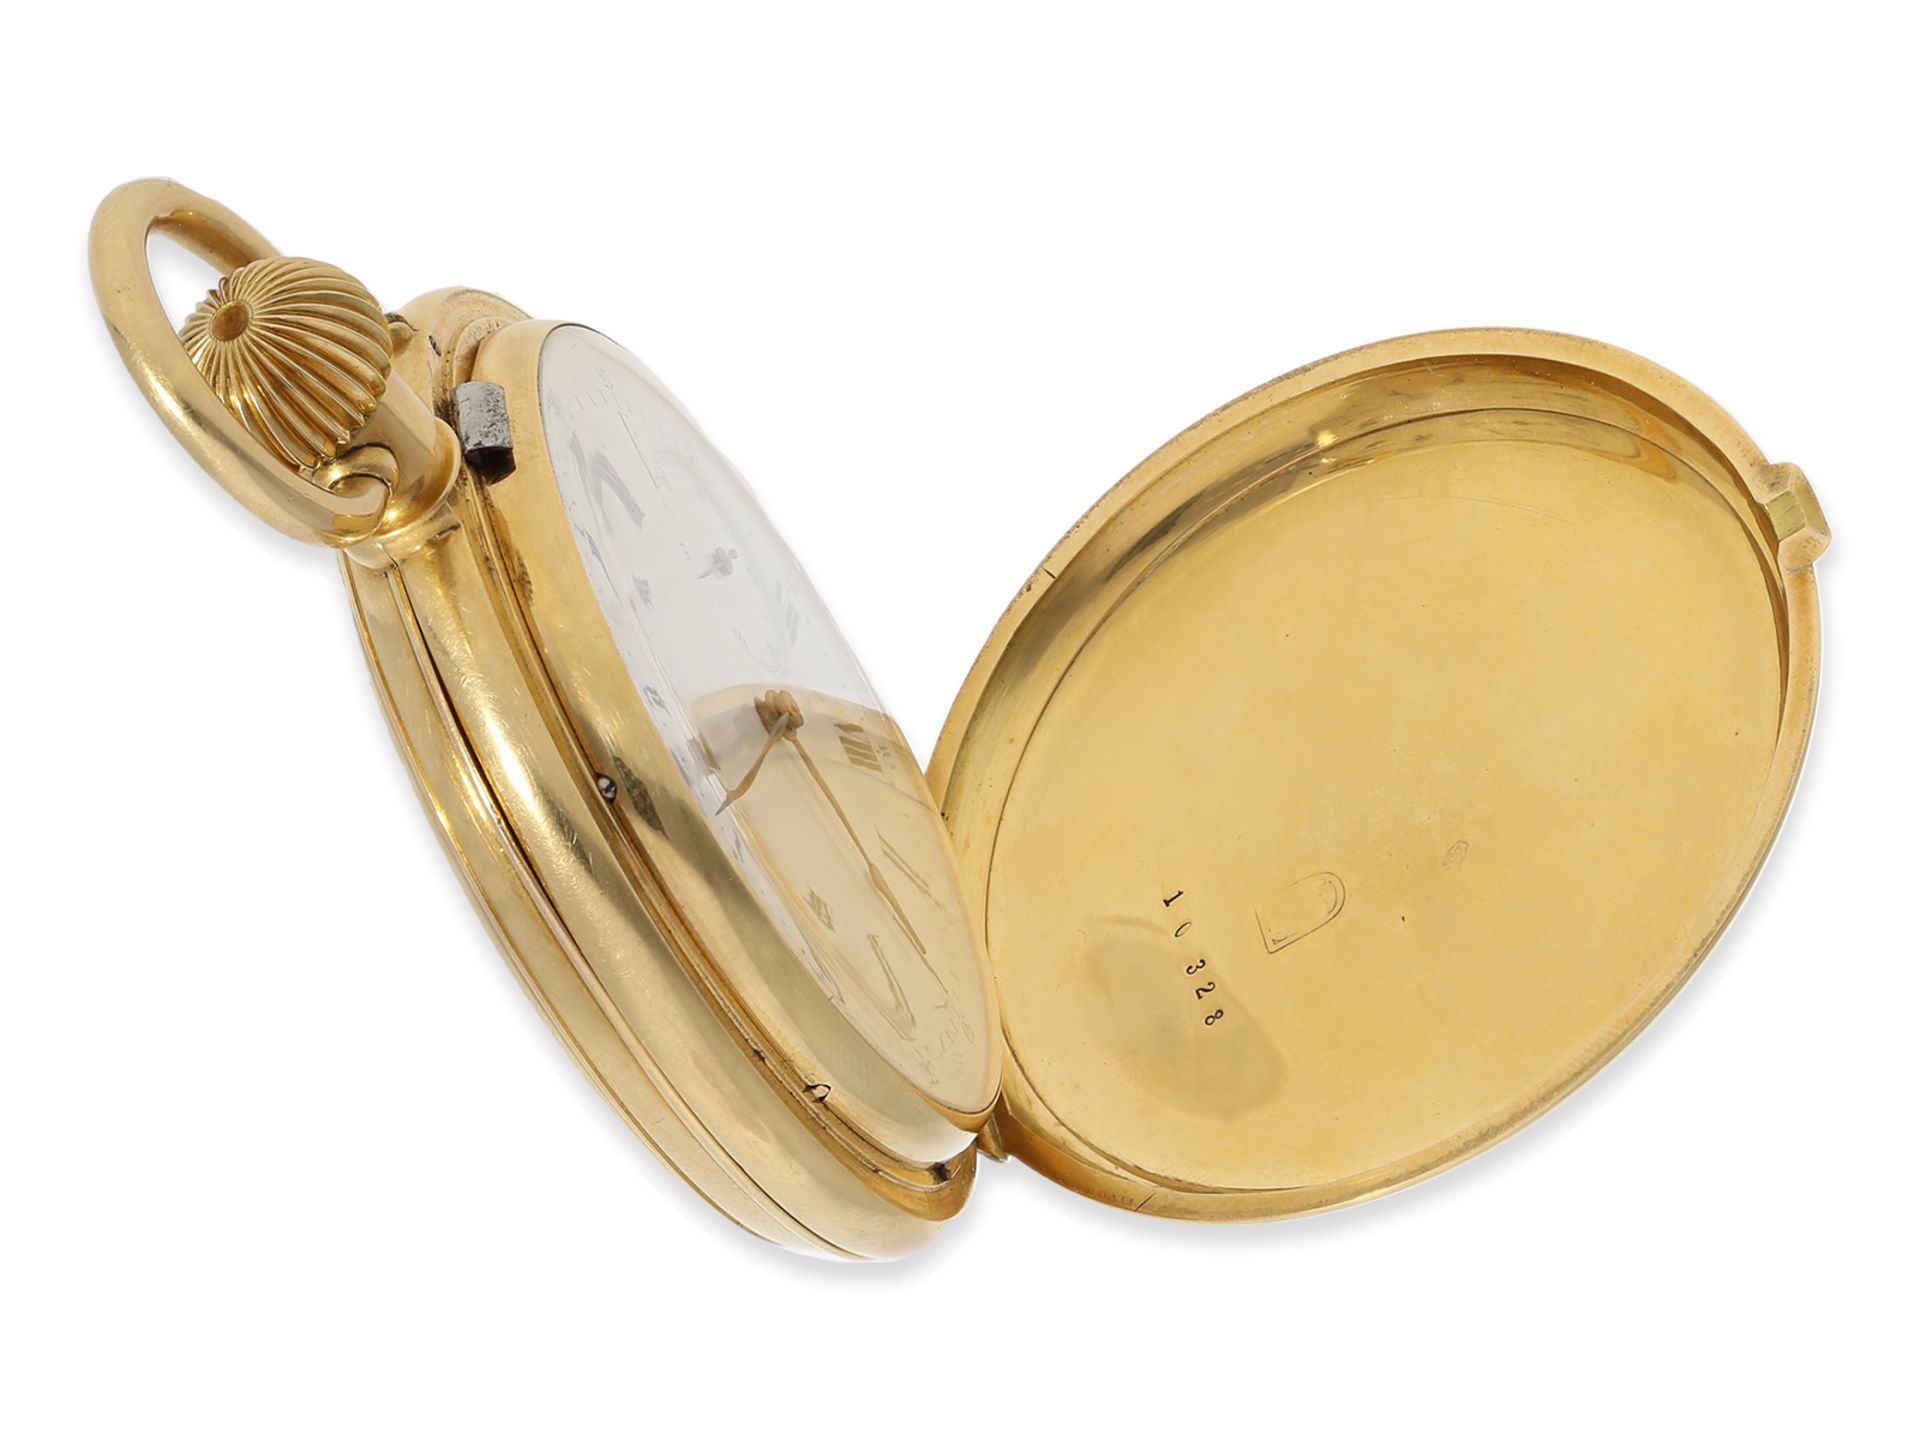 Taschenuhr: 18K Goldsavonnette mit Repetition, hervorragender Erhaltungszustand, signiert Pateck et  - Bild 6 aus 8